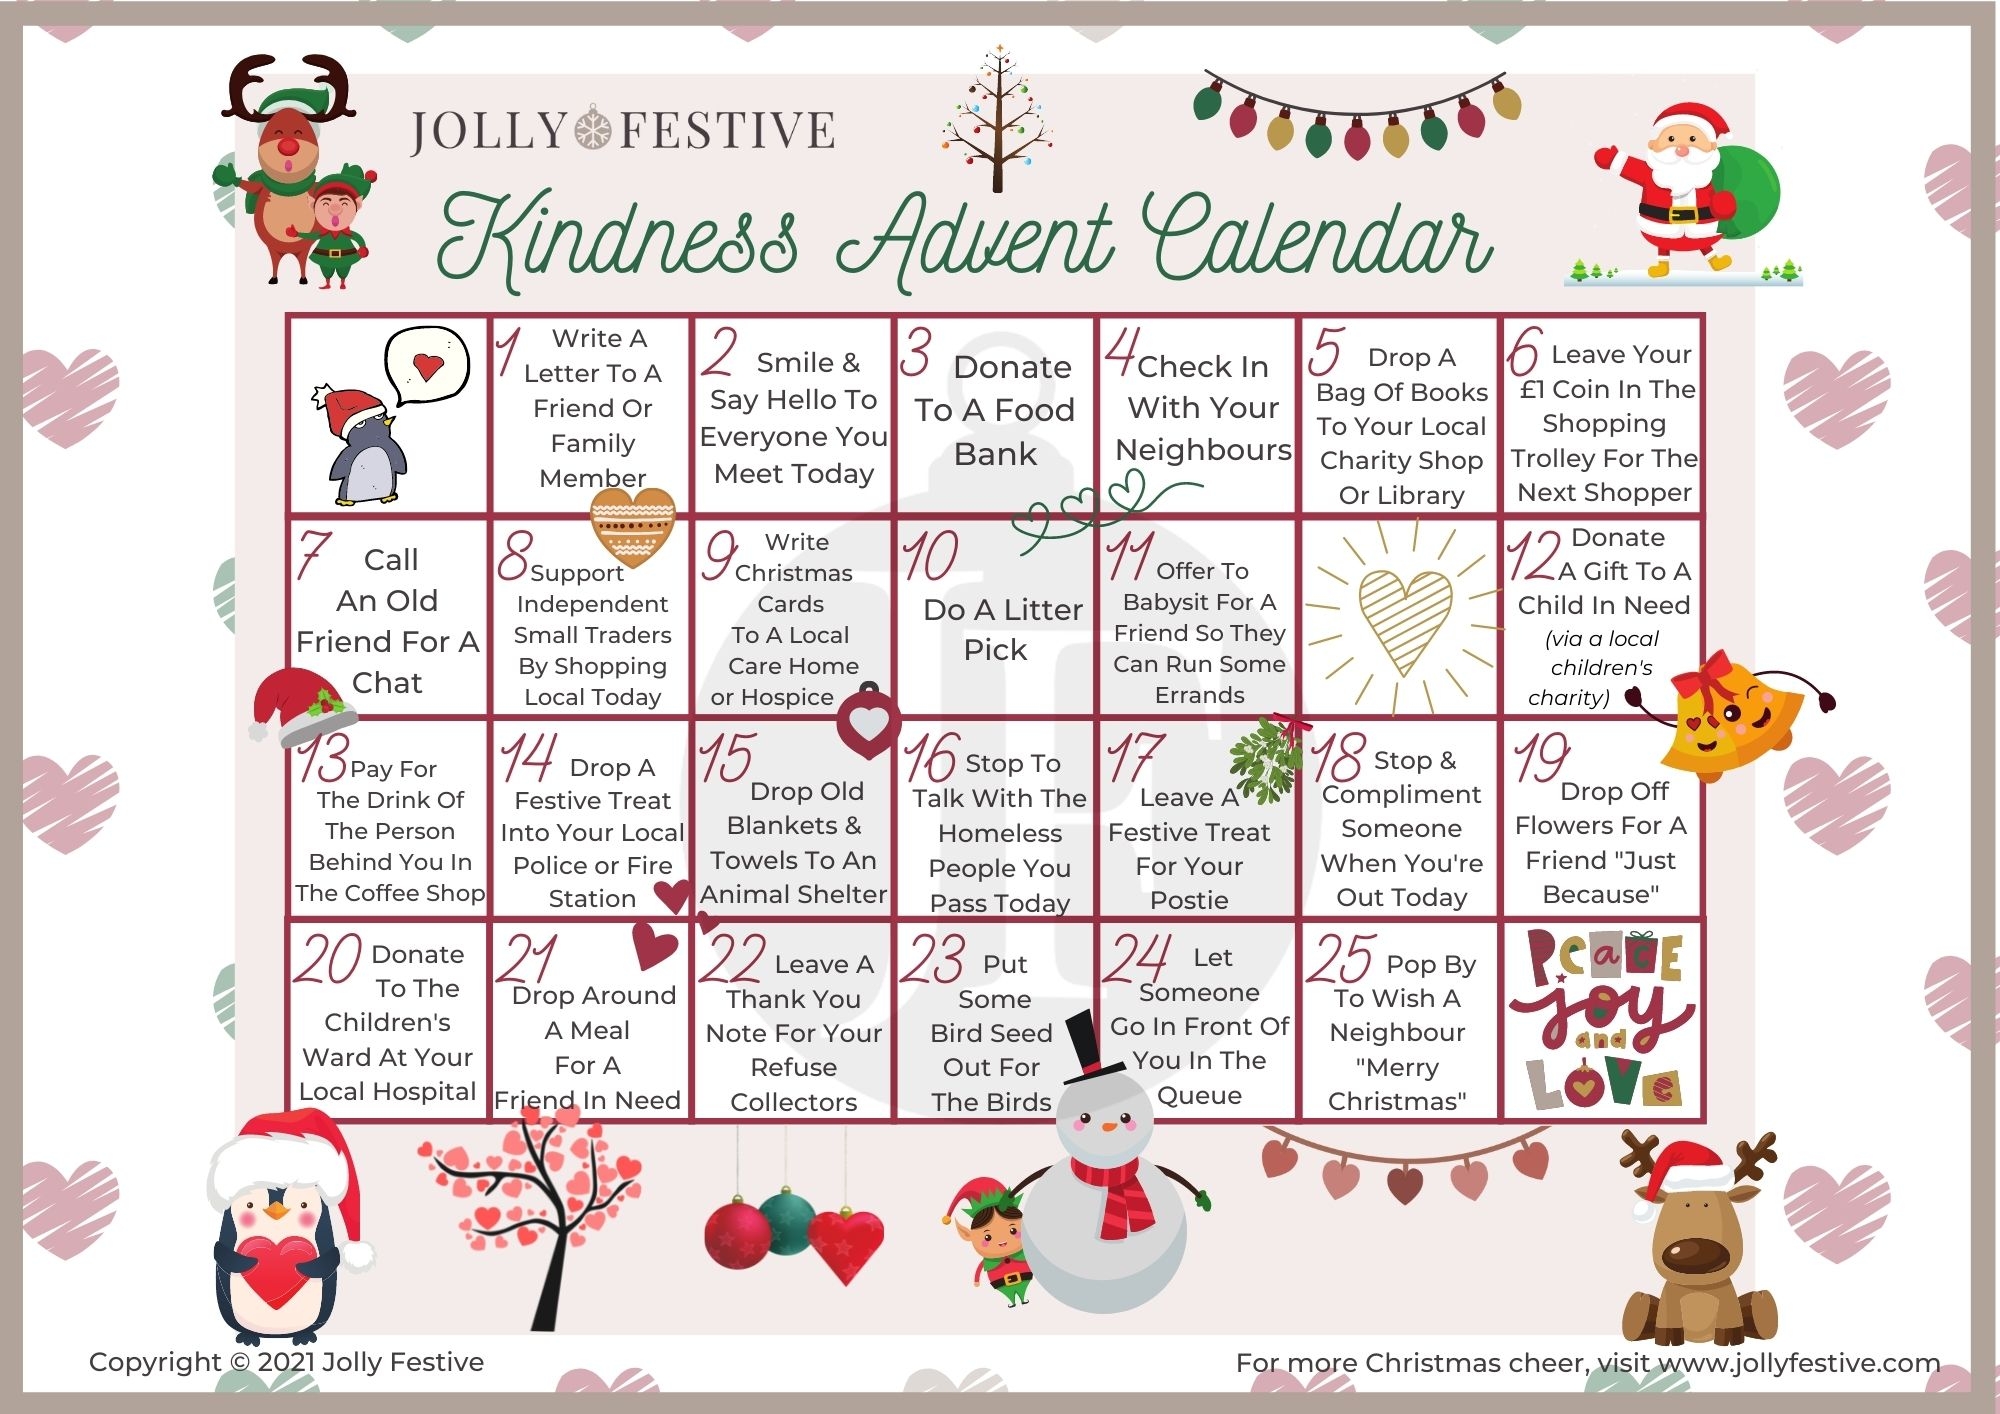 Spread Joy With A Kindness Advent Calendar Jolly Festive